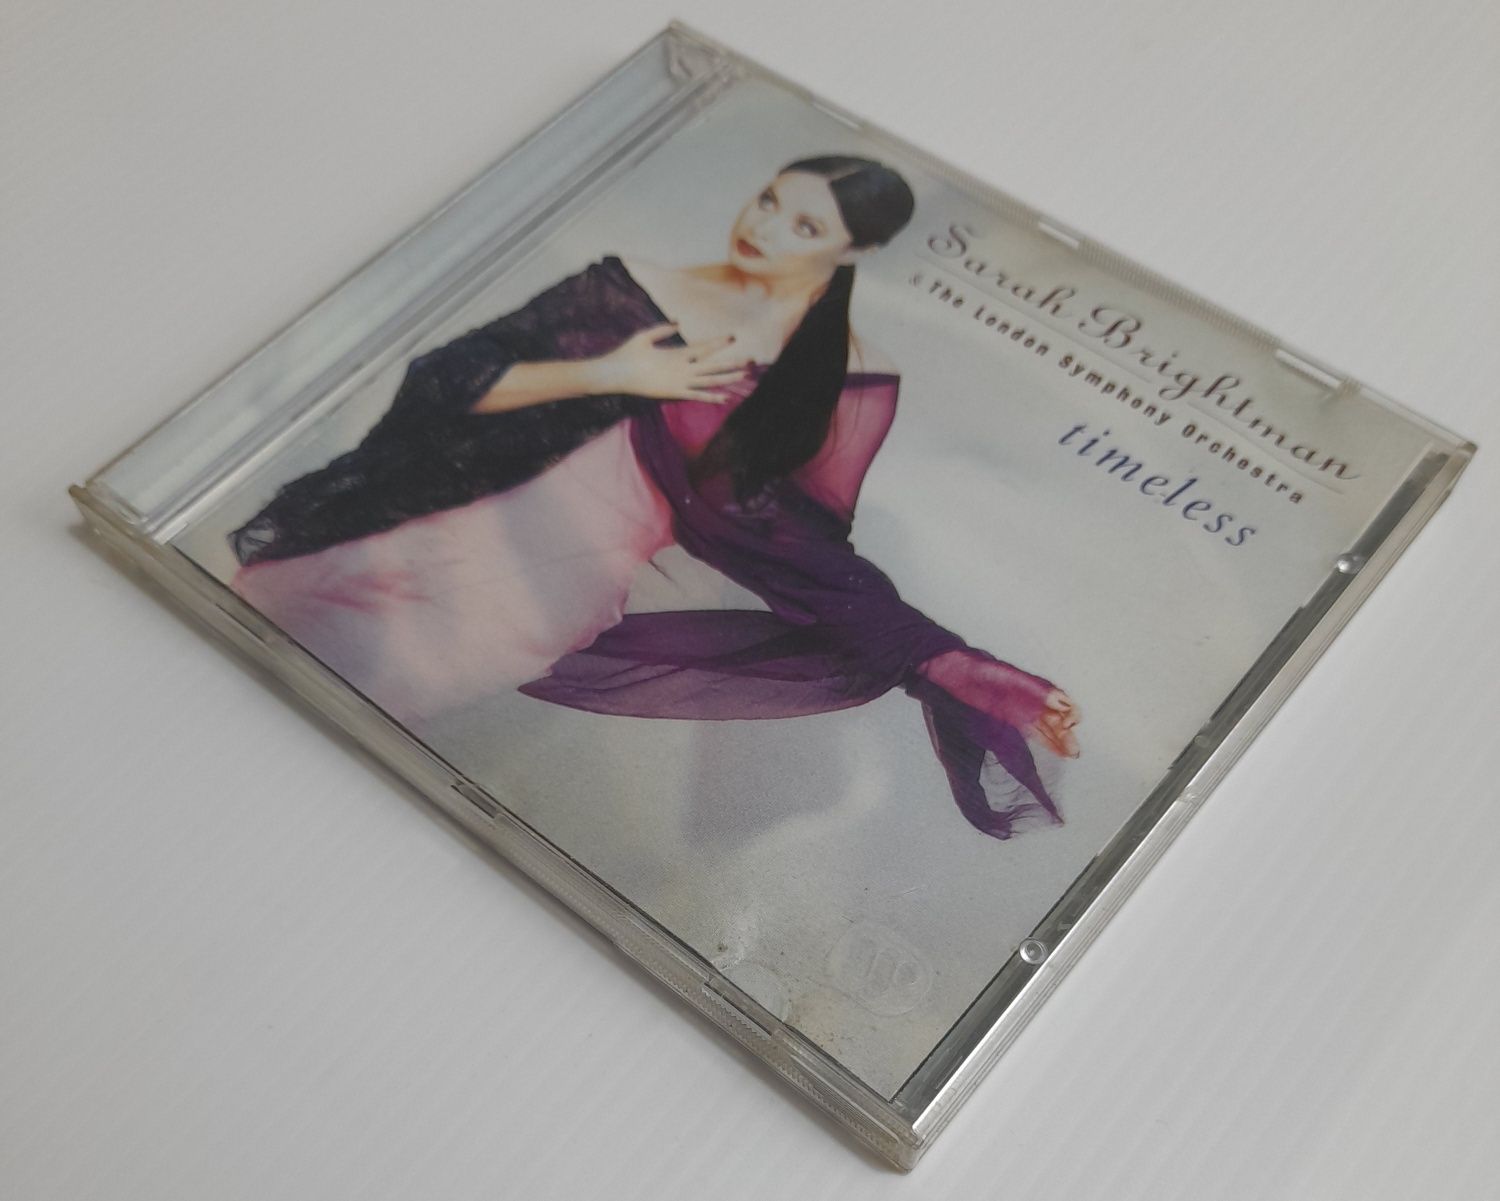 CD Sarah Brightman - Timeless